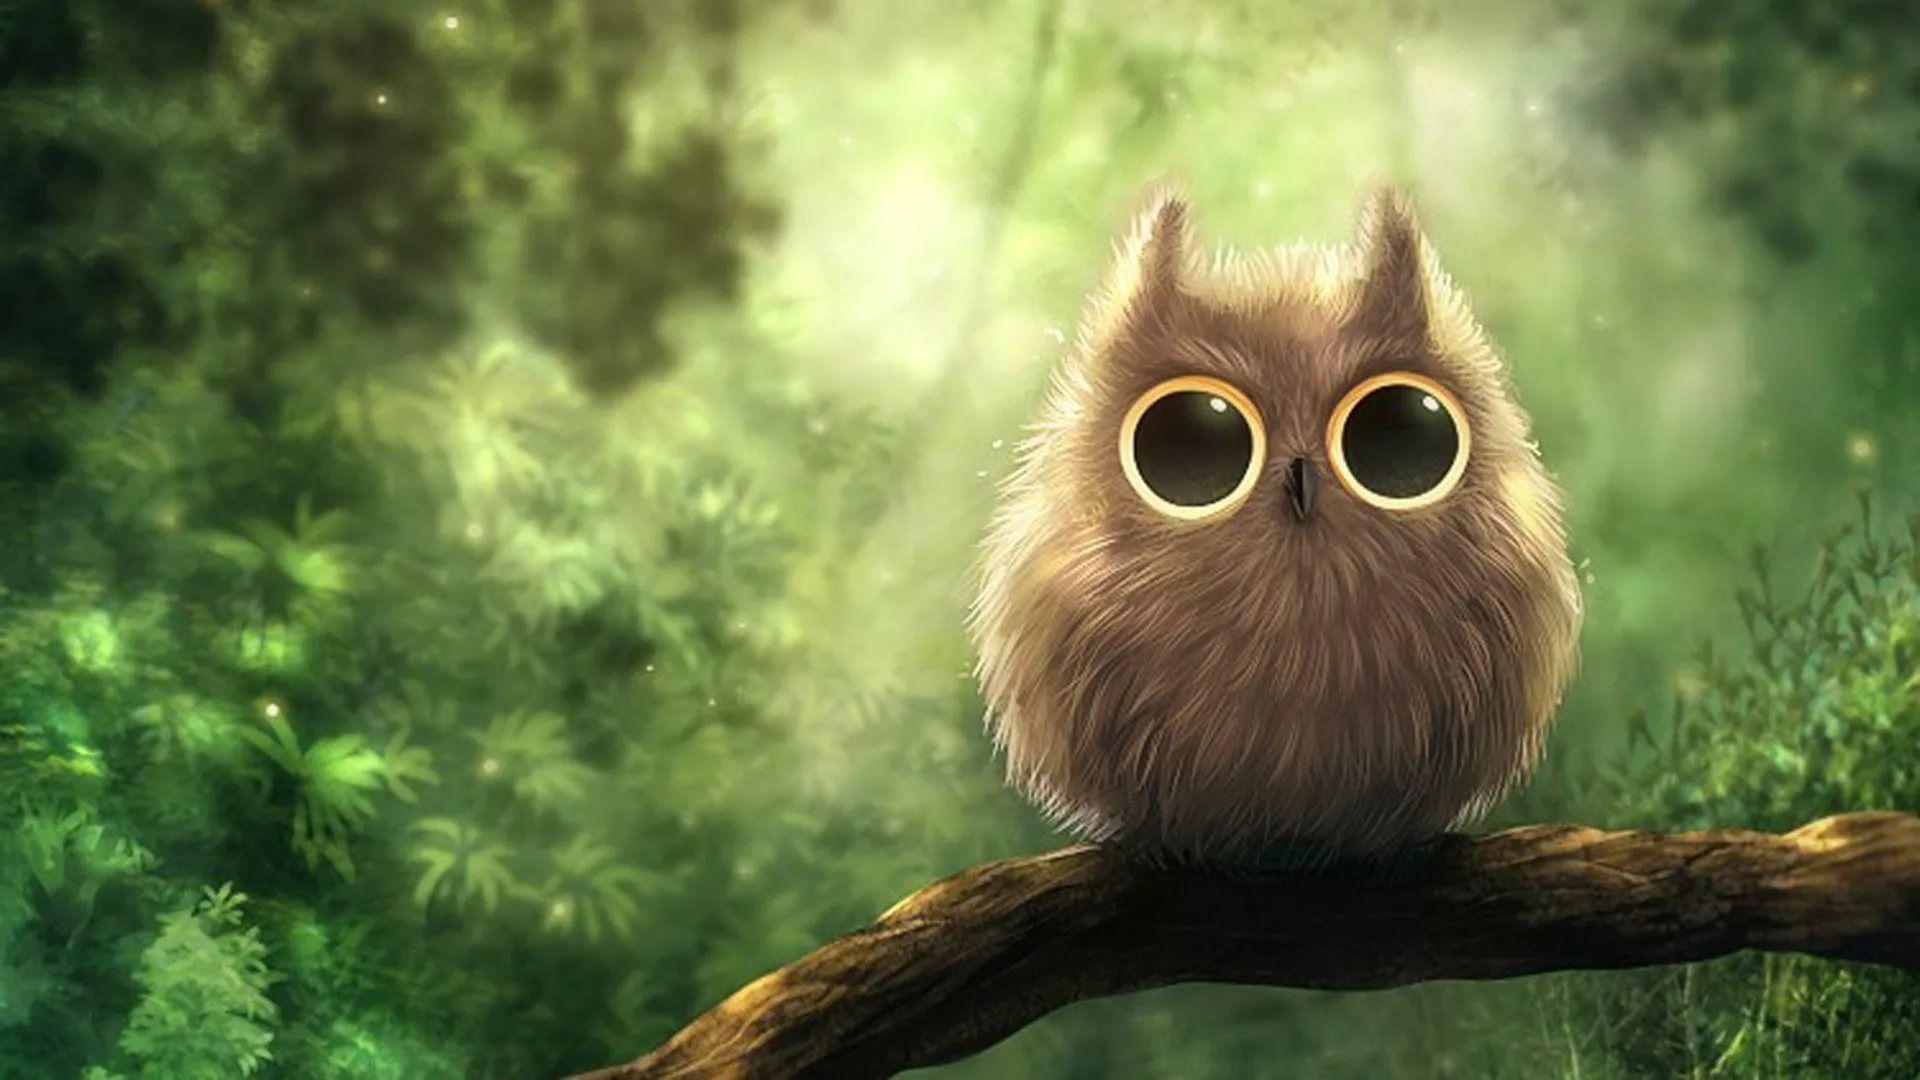 Cute Owl Desktop Wallpapers - Top Những Hình Ảnh Đẹp